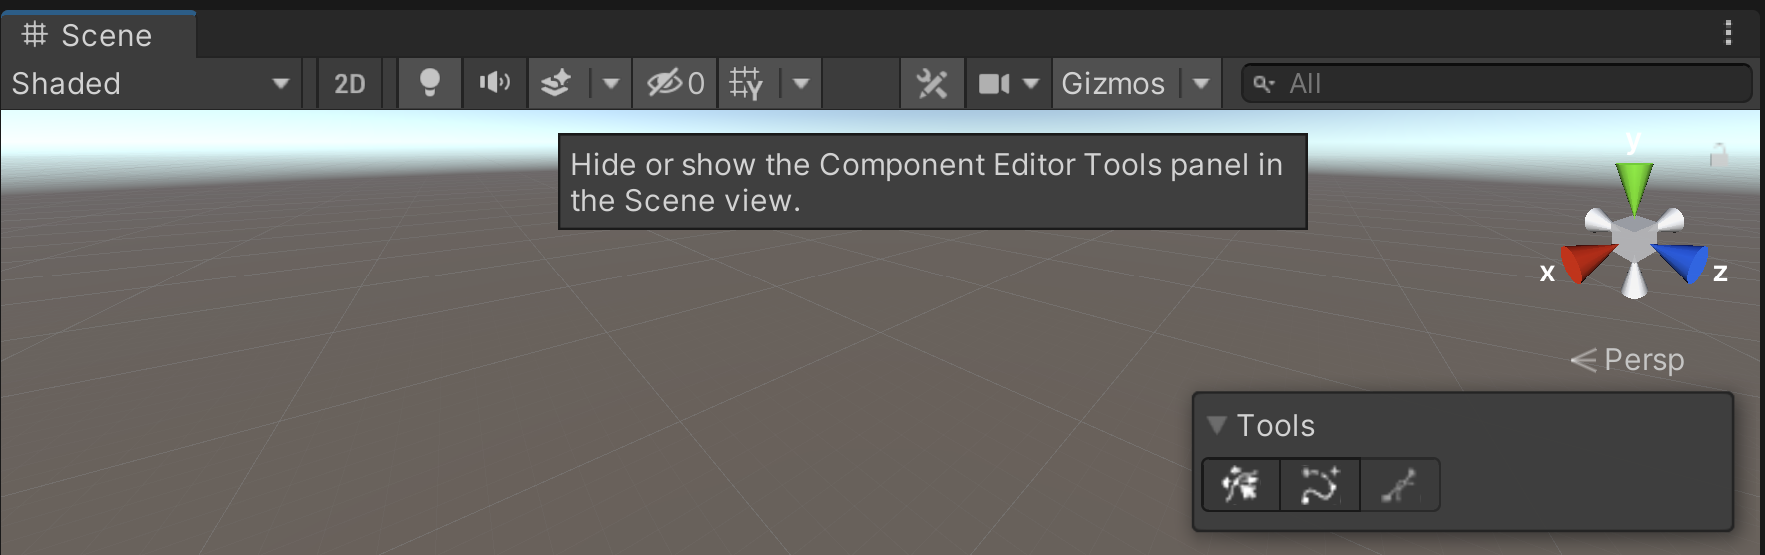 Component editor tools